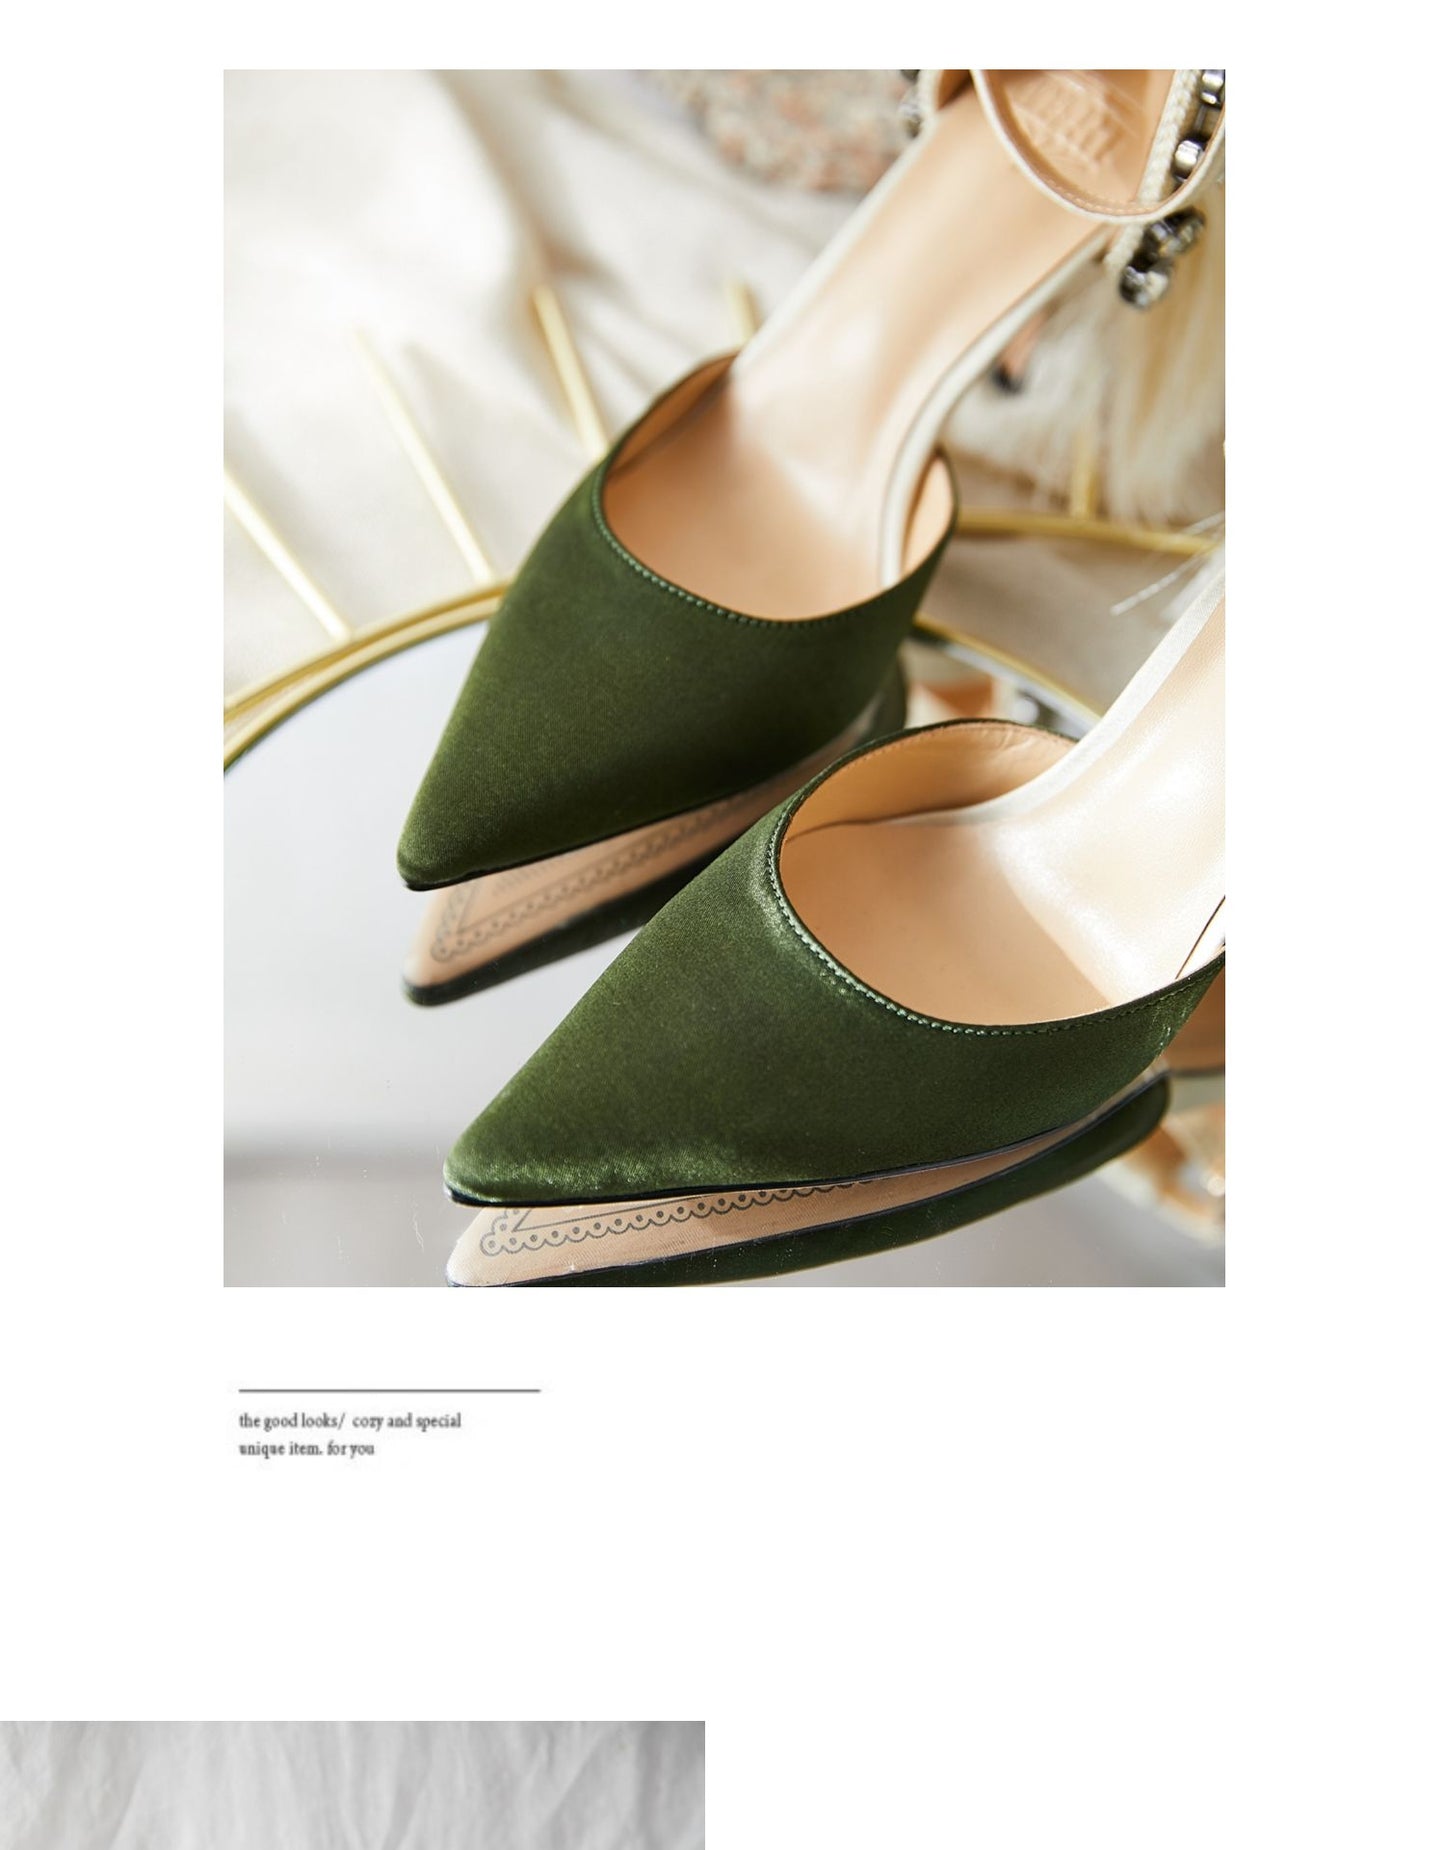 B-FEI original designer high heels green women's stiletto pumps- Diana